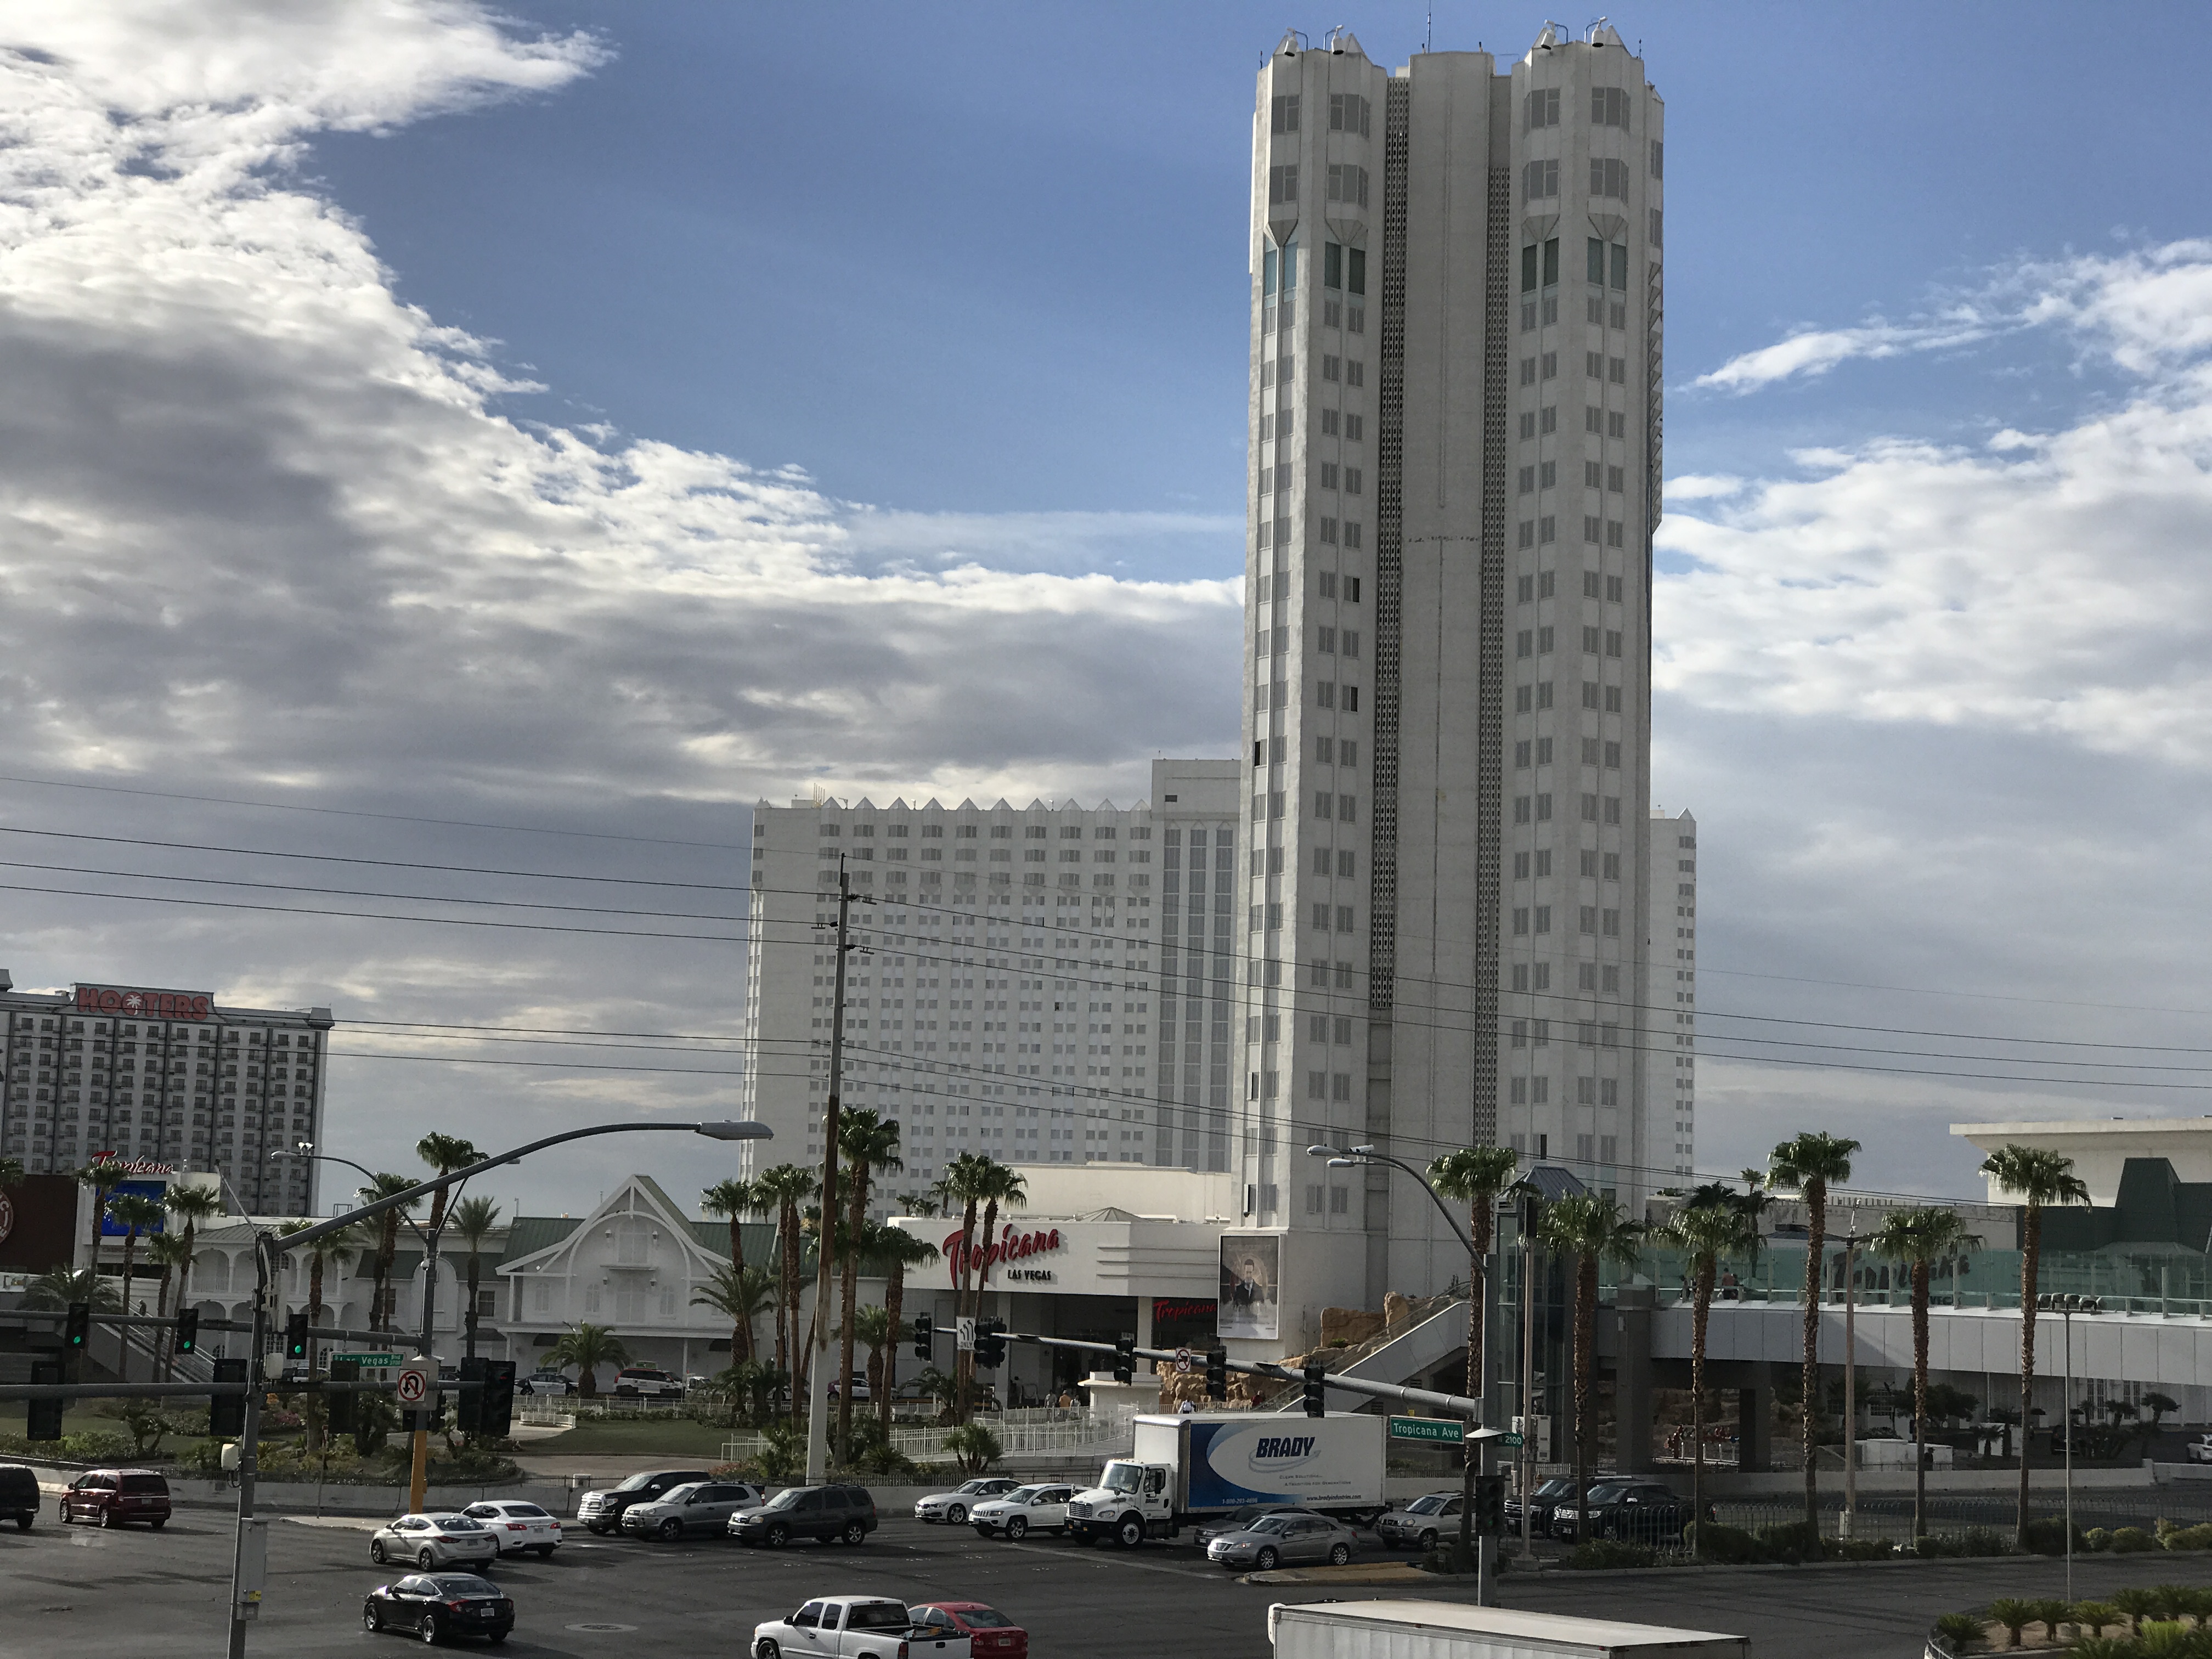 Renovated buffet at Caesars Palace set to reopen May 20 - Las Vegas Sun News